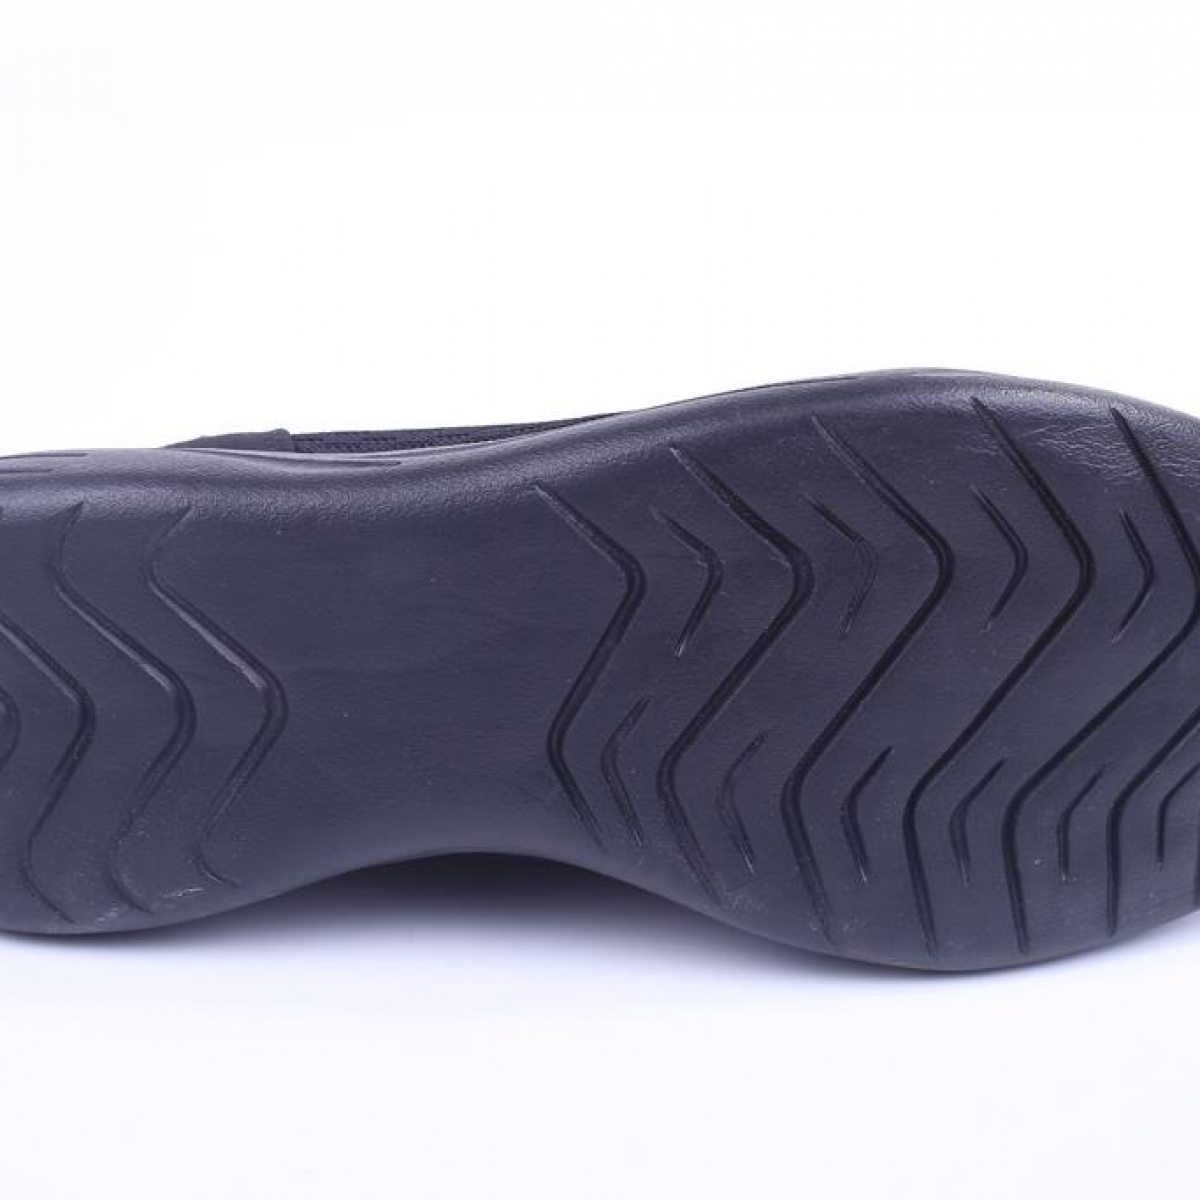 Flo M.P 191-7364 Yazlık Fileli Aqua Erkek Yürüyüş Spor Ayakkabısı Siyah. 4